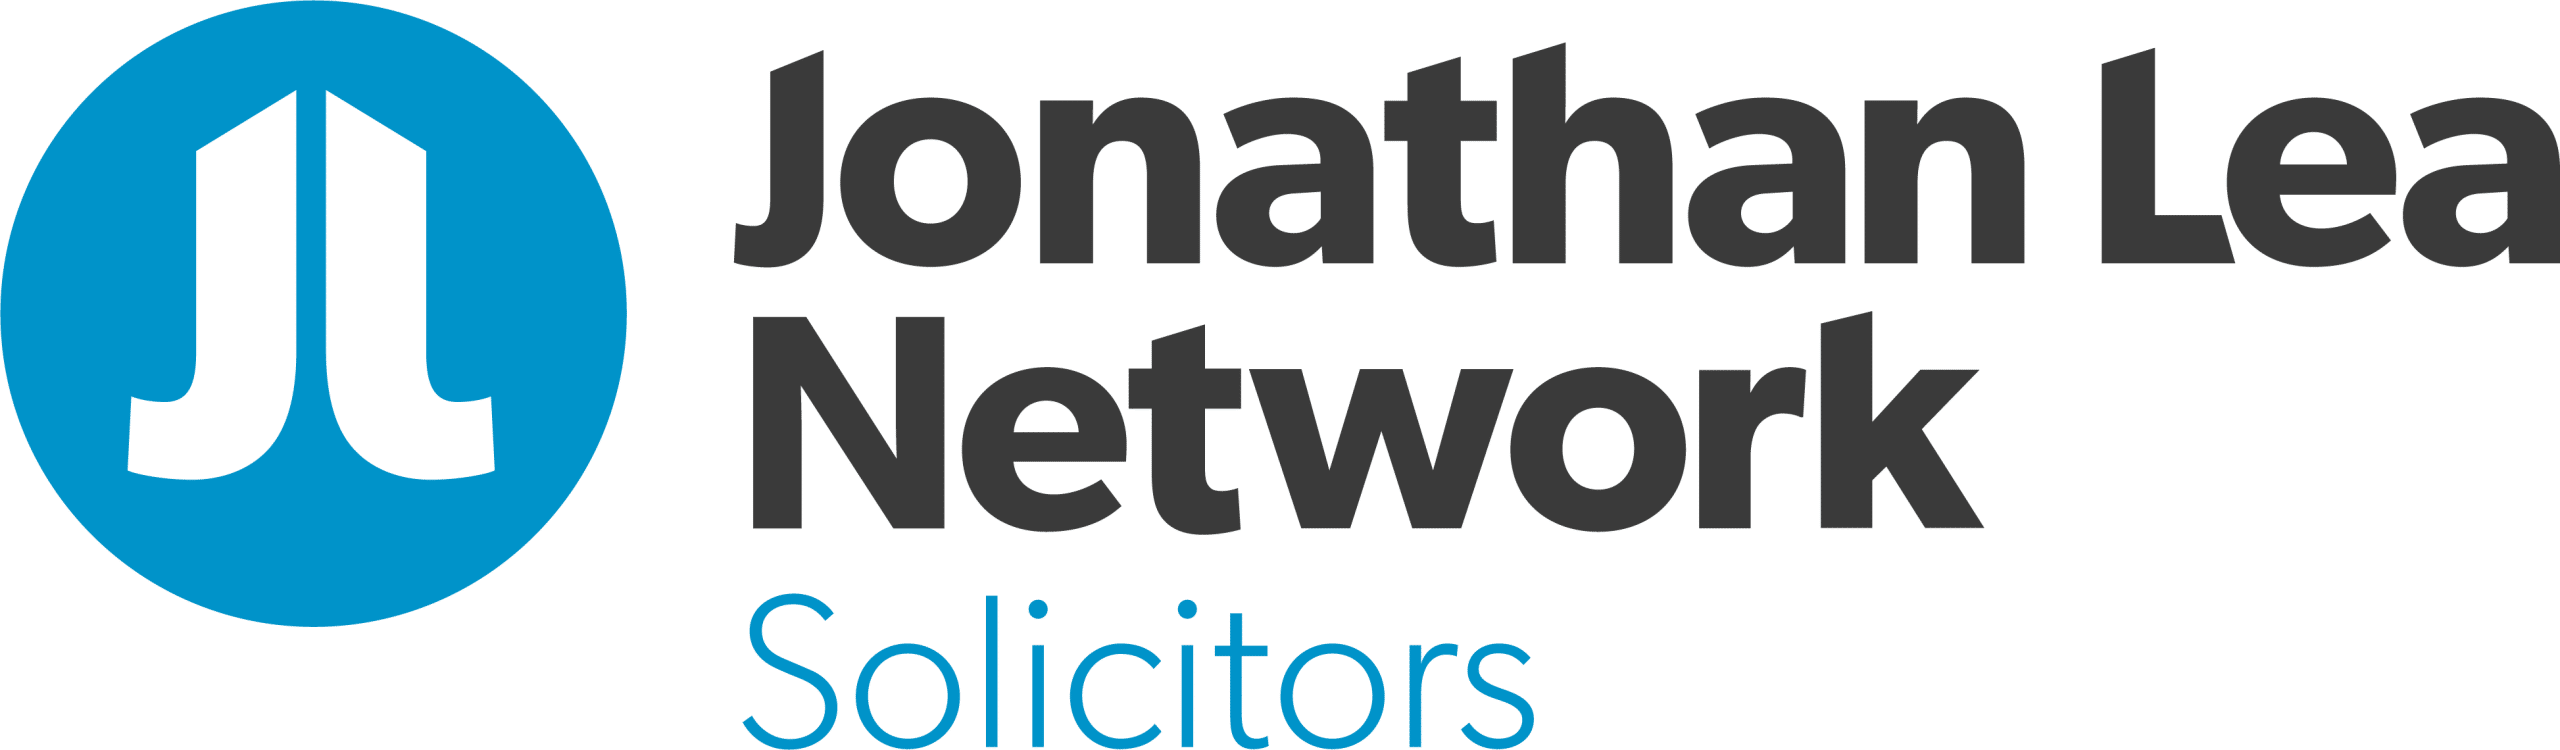 The Jonathan Lea Network